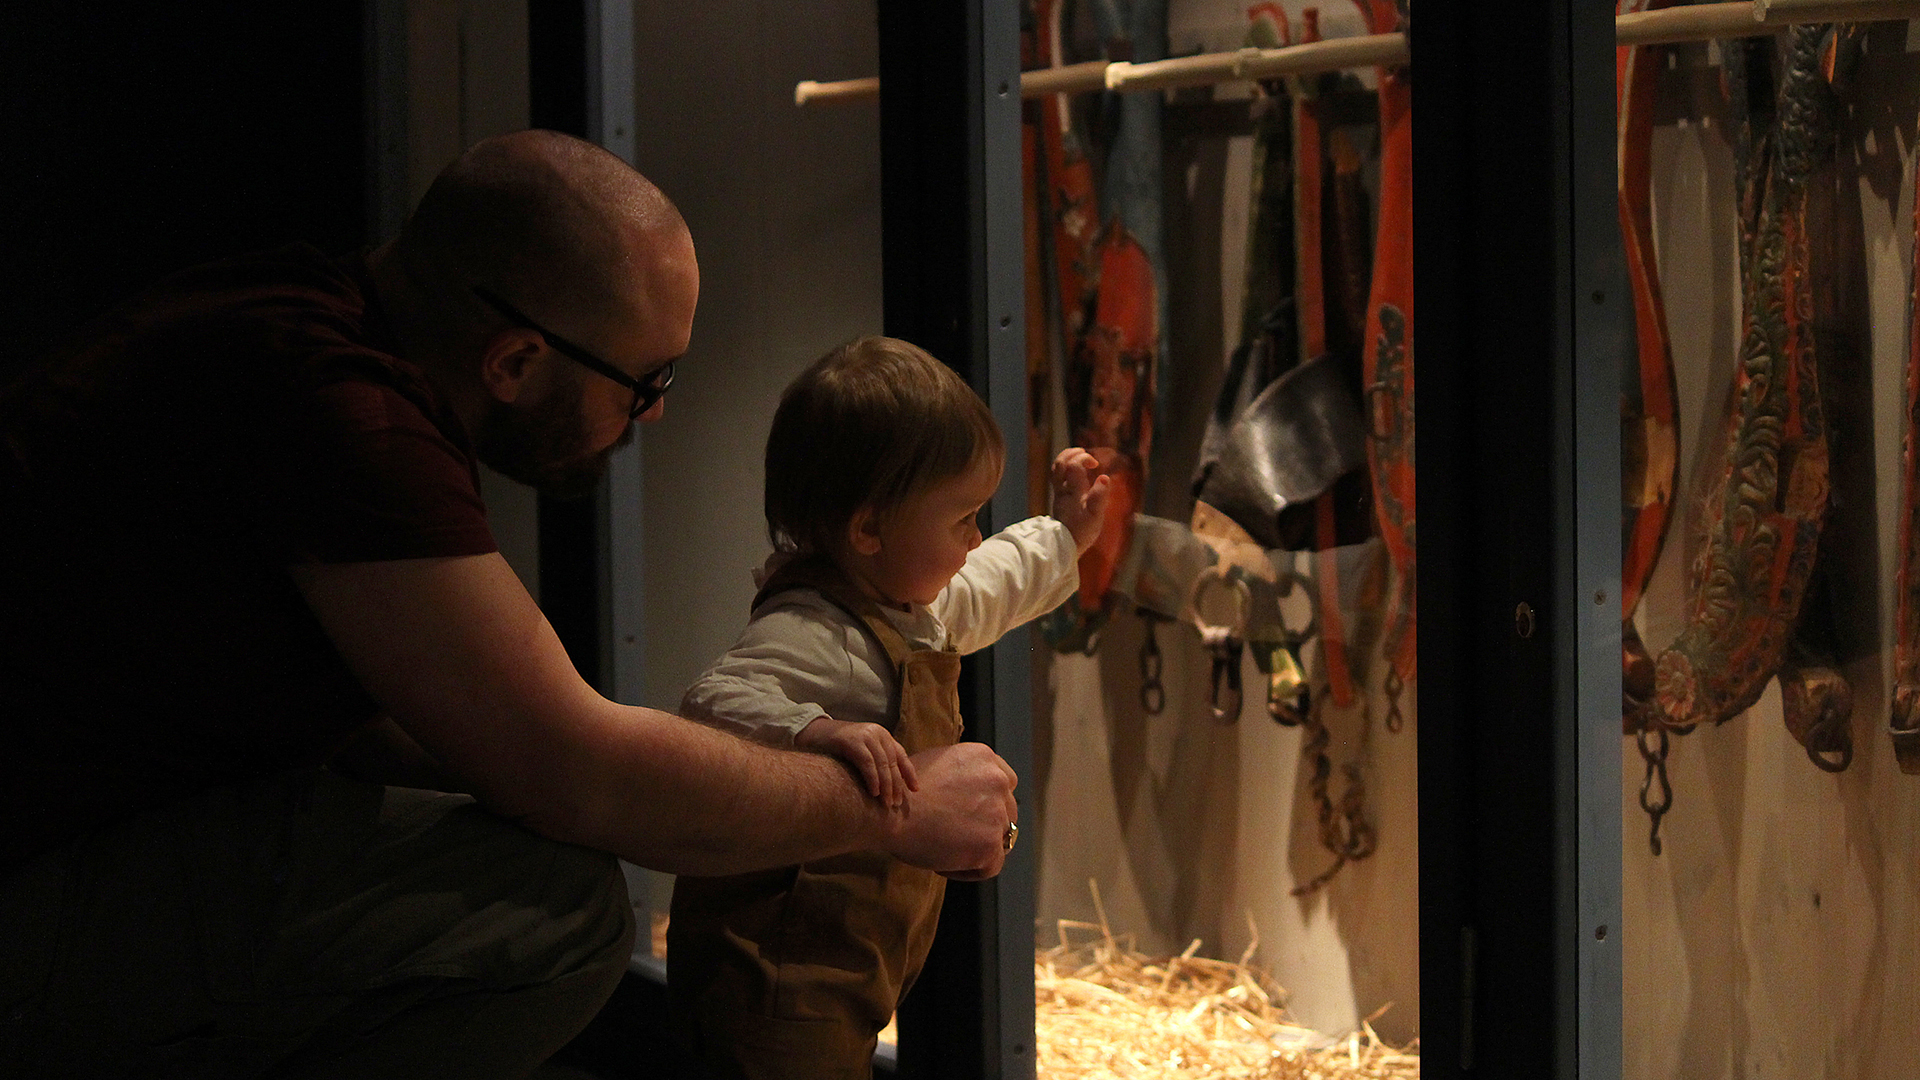 En pappa och et barn som tittar på kulturhistoriska föremål